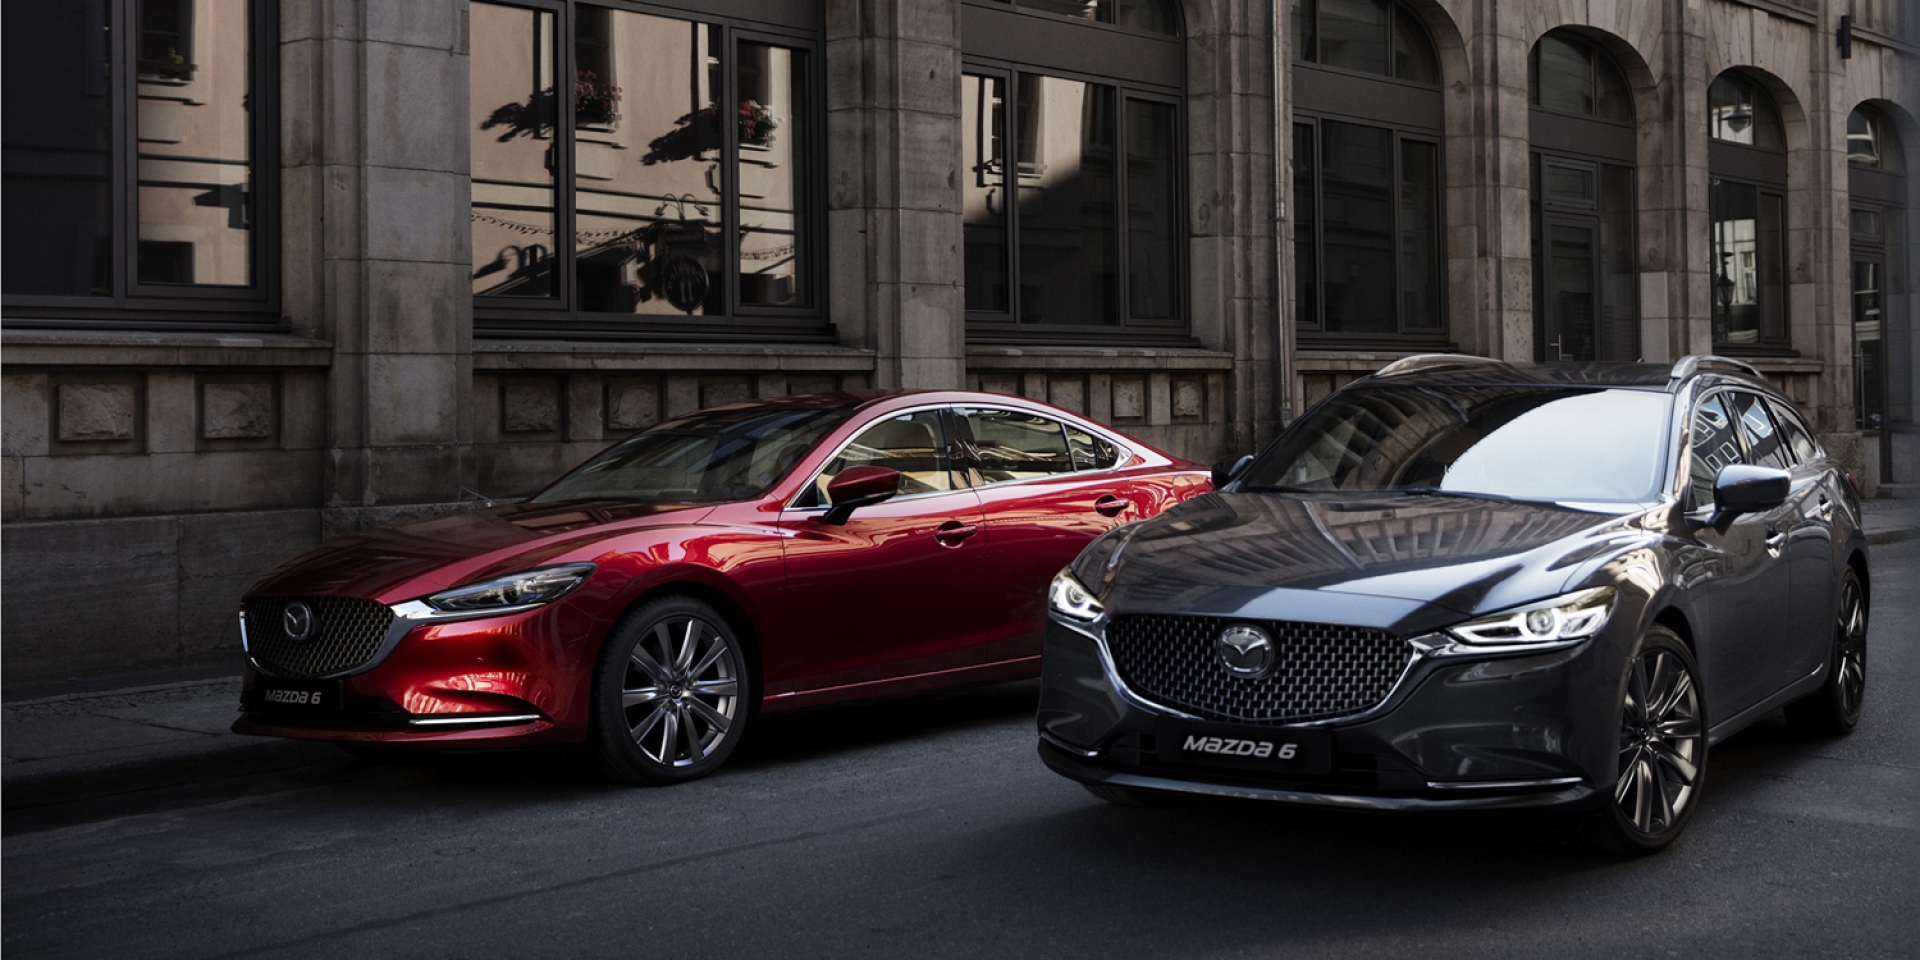 以五感體驗旗艦風範  All-new Mazda6巡迴預賞會展開